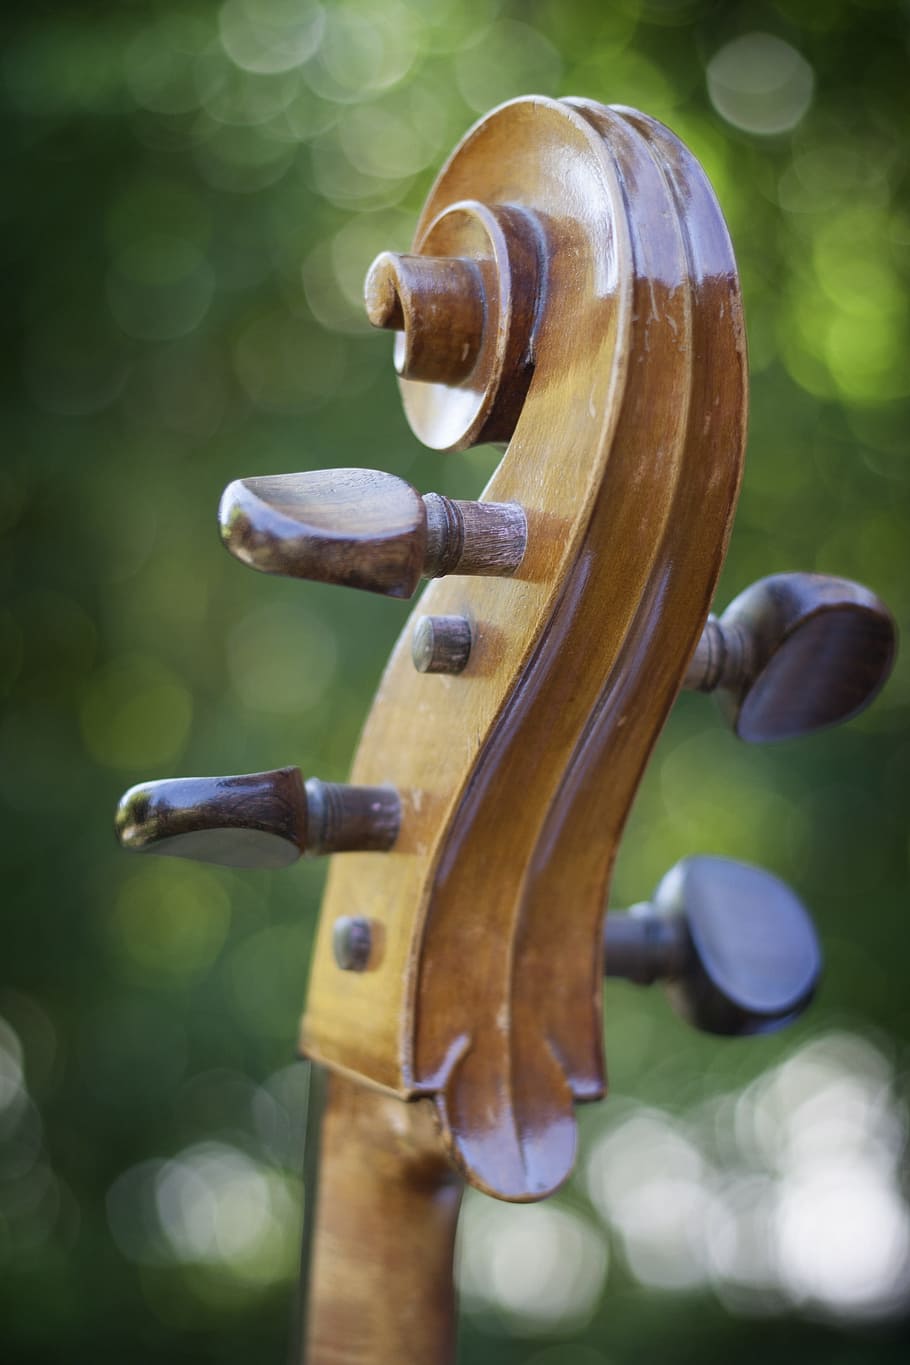 selectivo, fotografía de enfoque, marrón, clavijero del instrumento, violonchelo, instrumento de cuerda, instrumento, violín, madera - material, instrumento musical